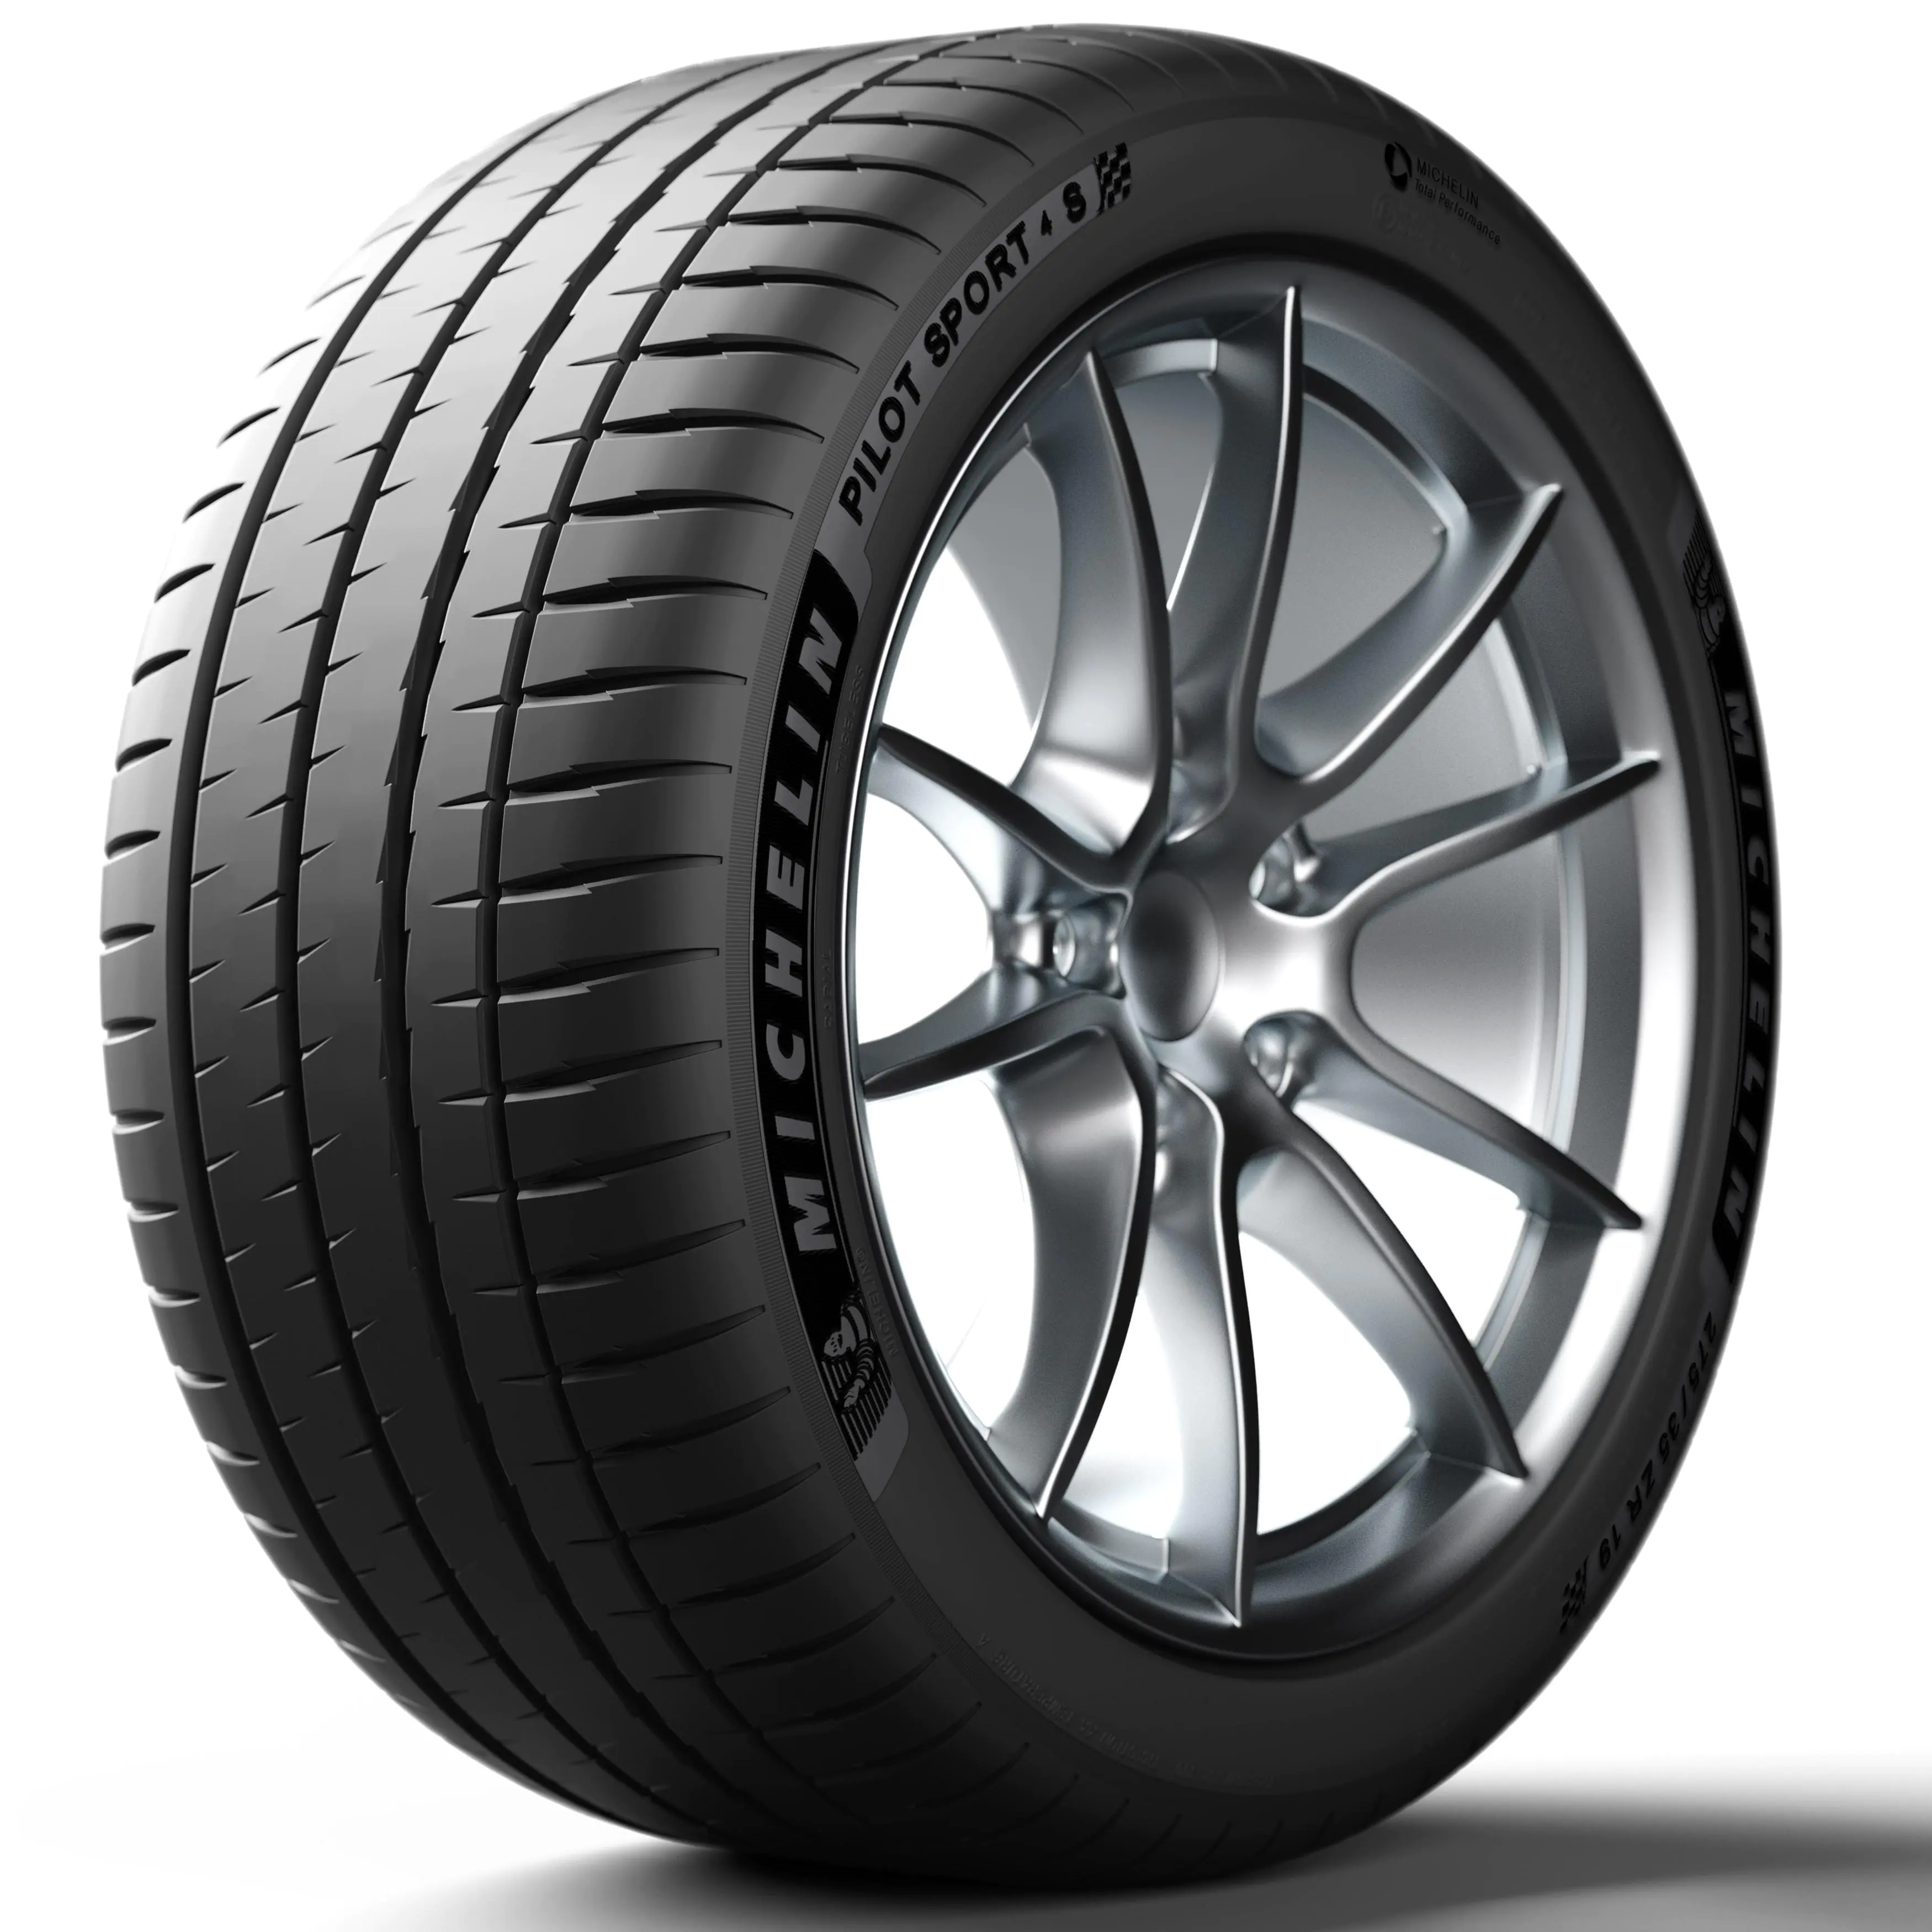 Michelin Michelin 325/30 R21 108Y P.SPORT 4 S XL pneumatici nuovi Estivo 